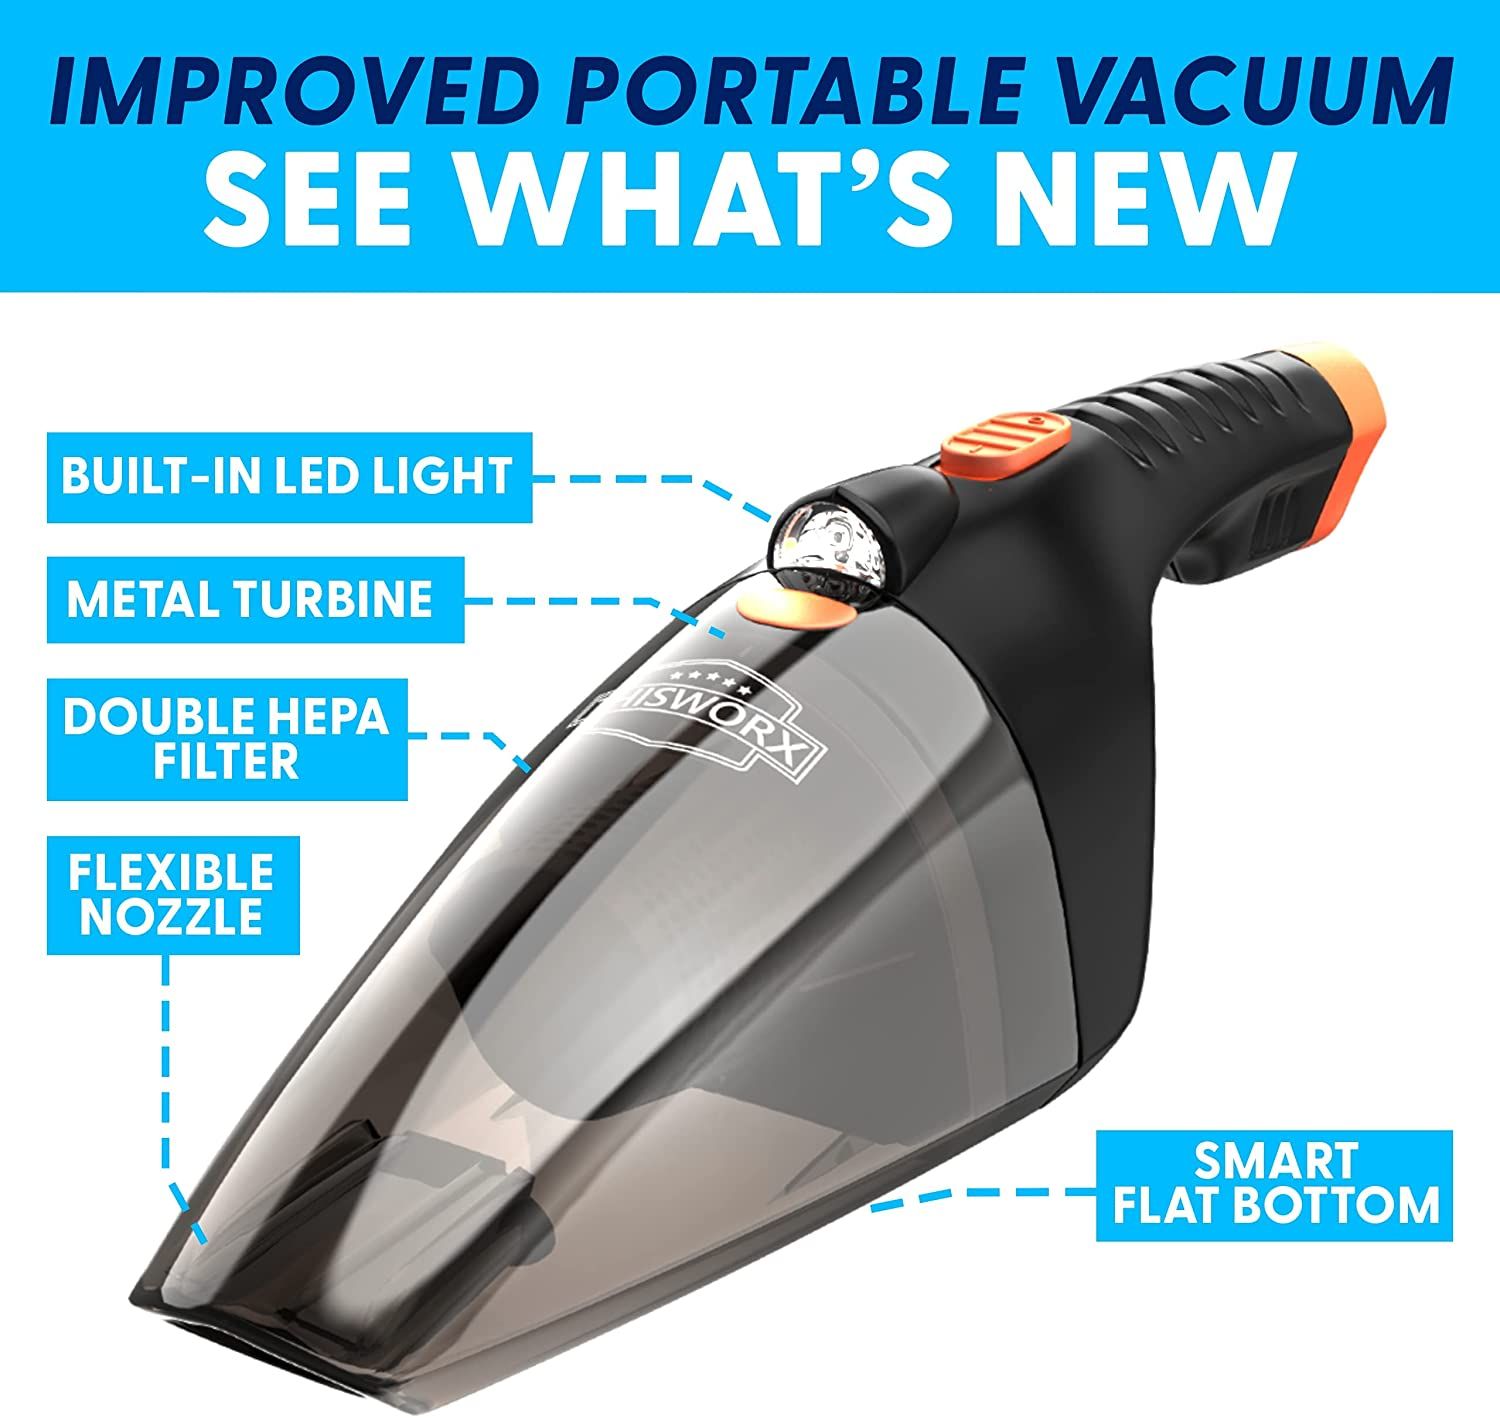 ThisWorx Car Vacuum Cleaner features